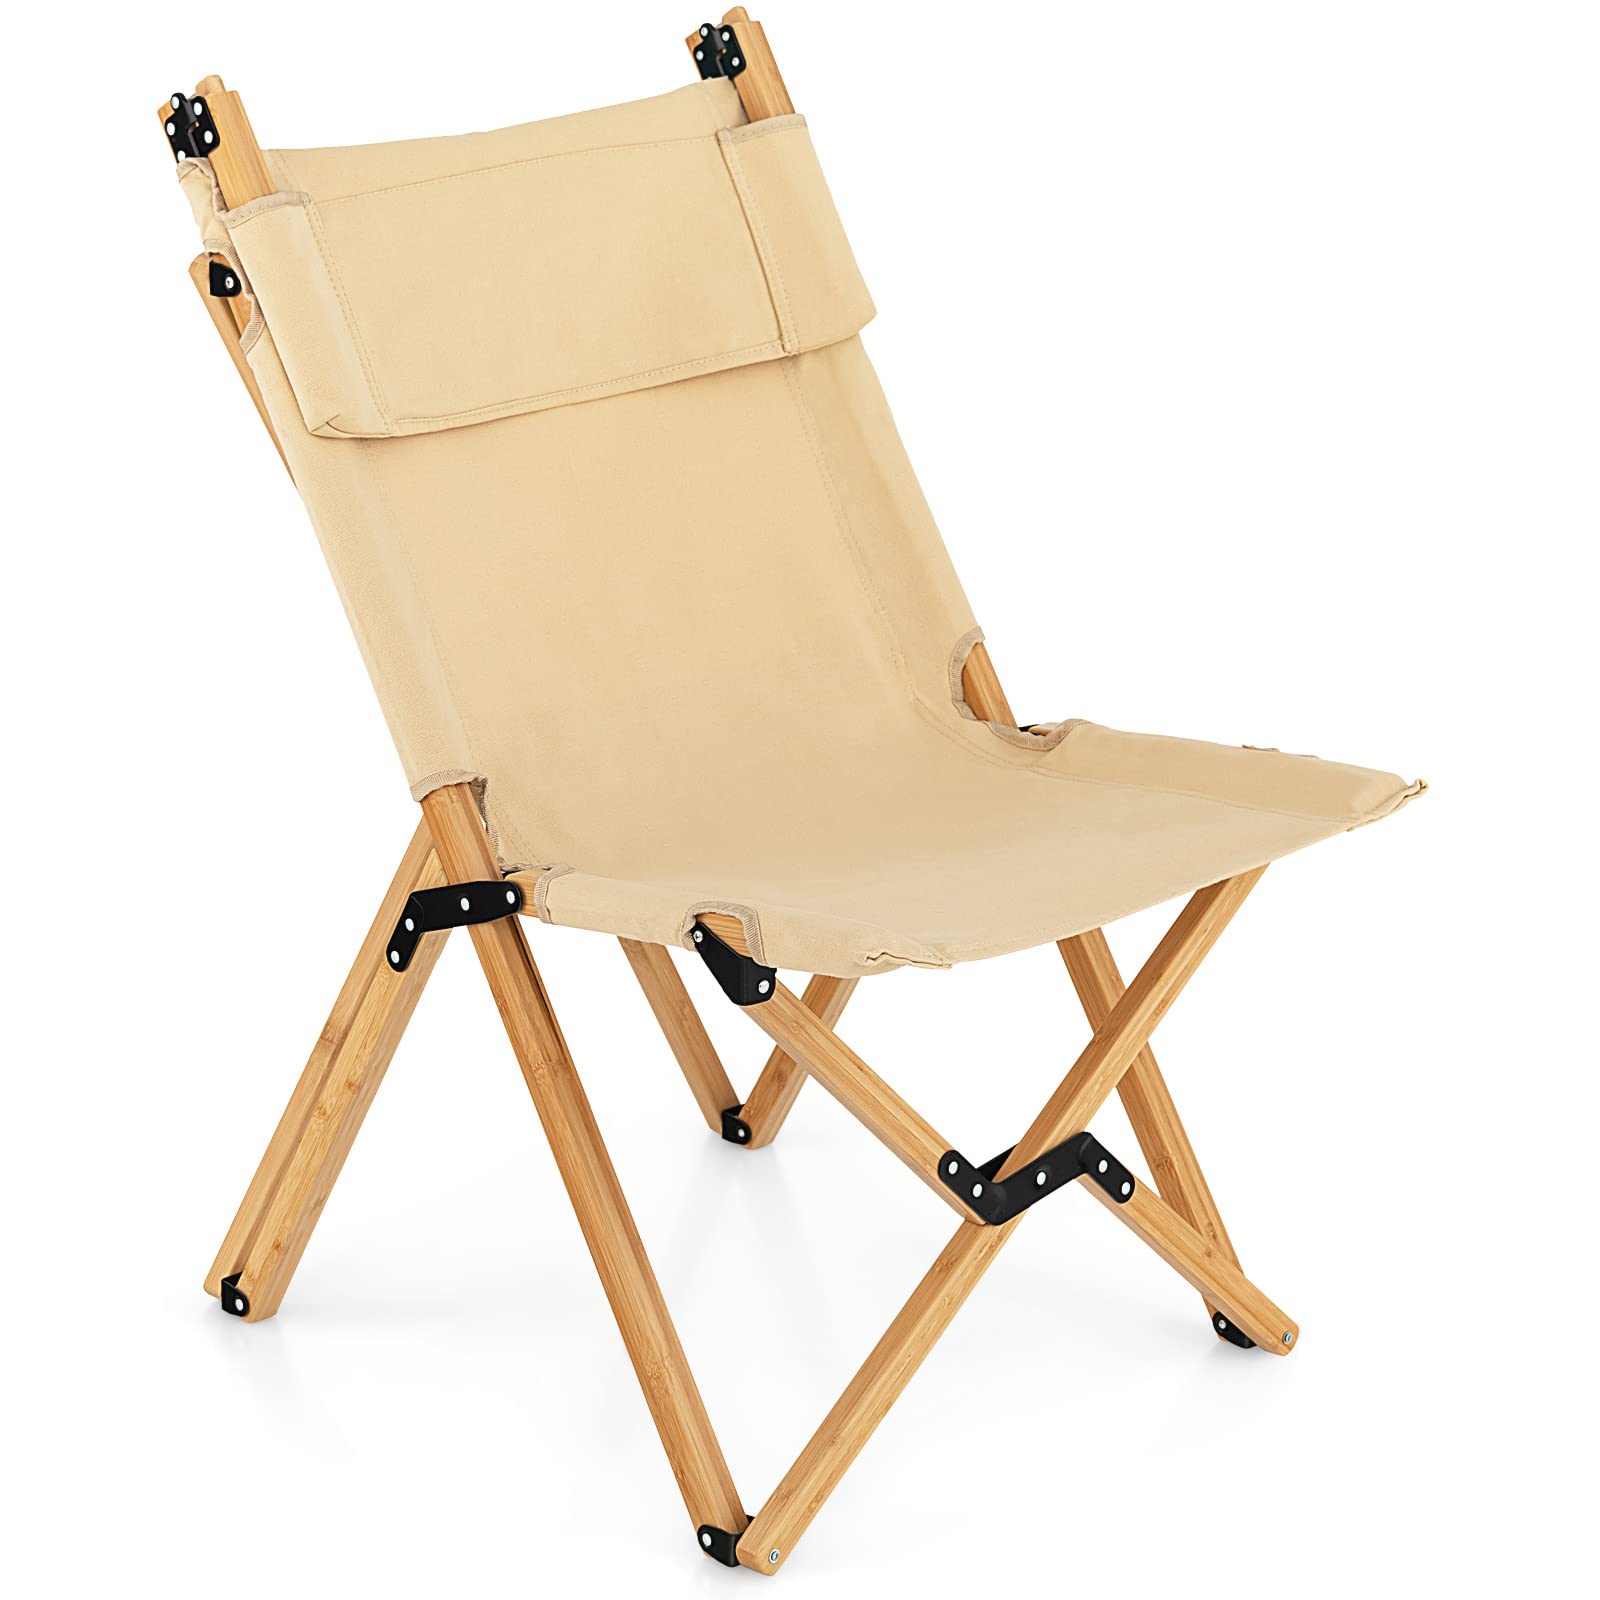 Giantex Folding Camping Chairs